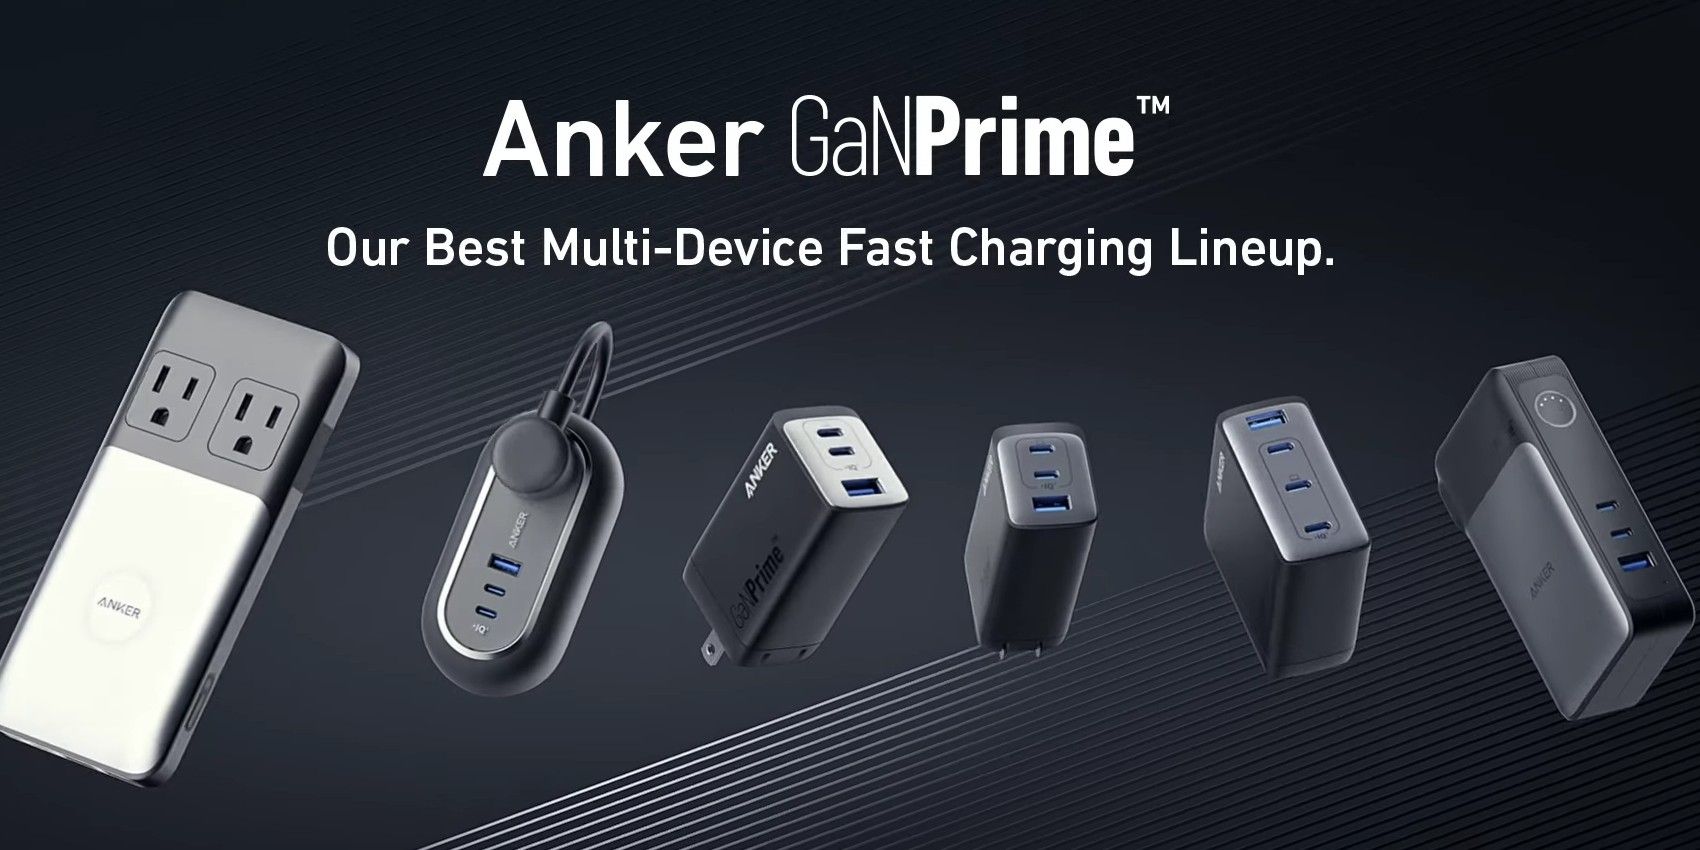 Los nuevos cargadores GaNPrima de Anker ofrecen una carga más rápida e inteligente